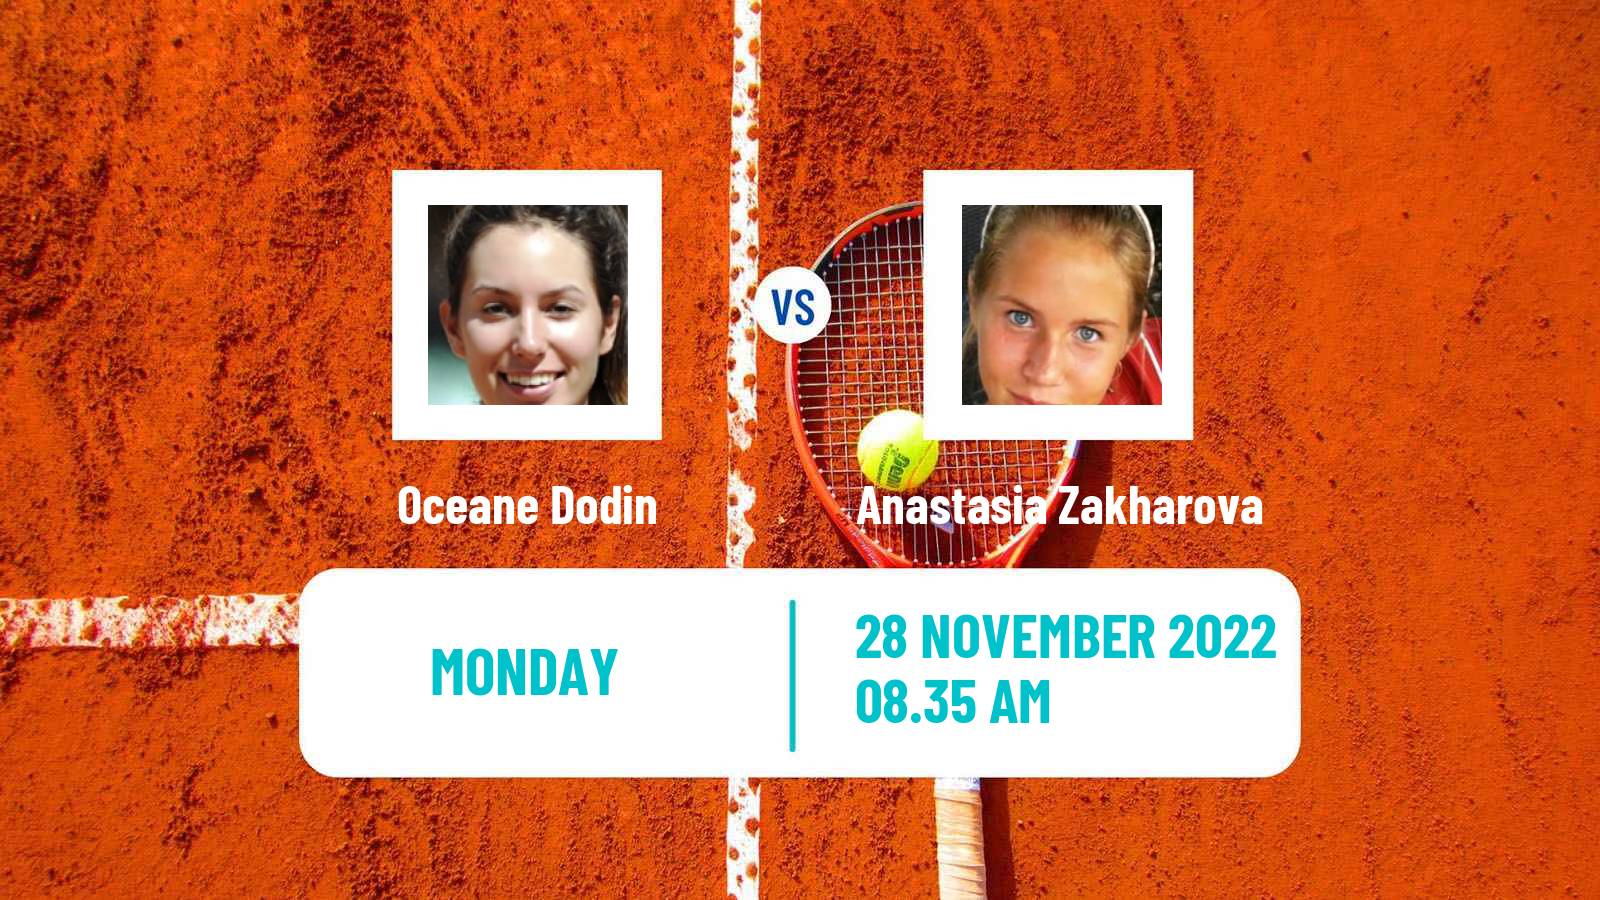 Tennis ATP Challenger Oceane Dodin - Anastasia Zakharova